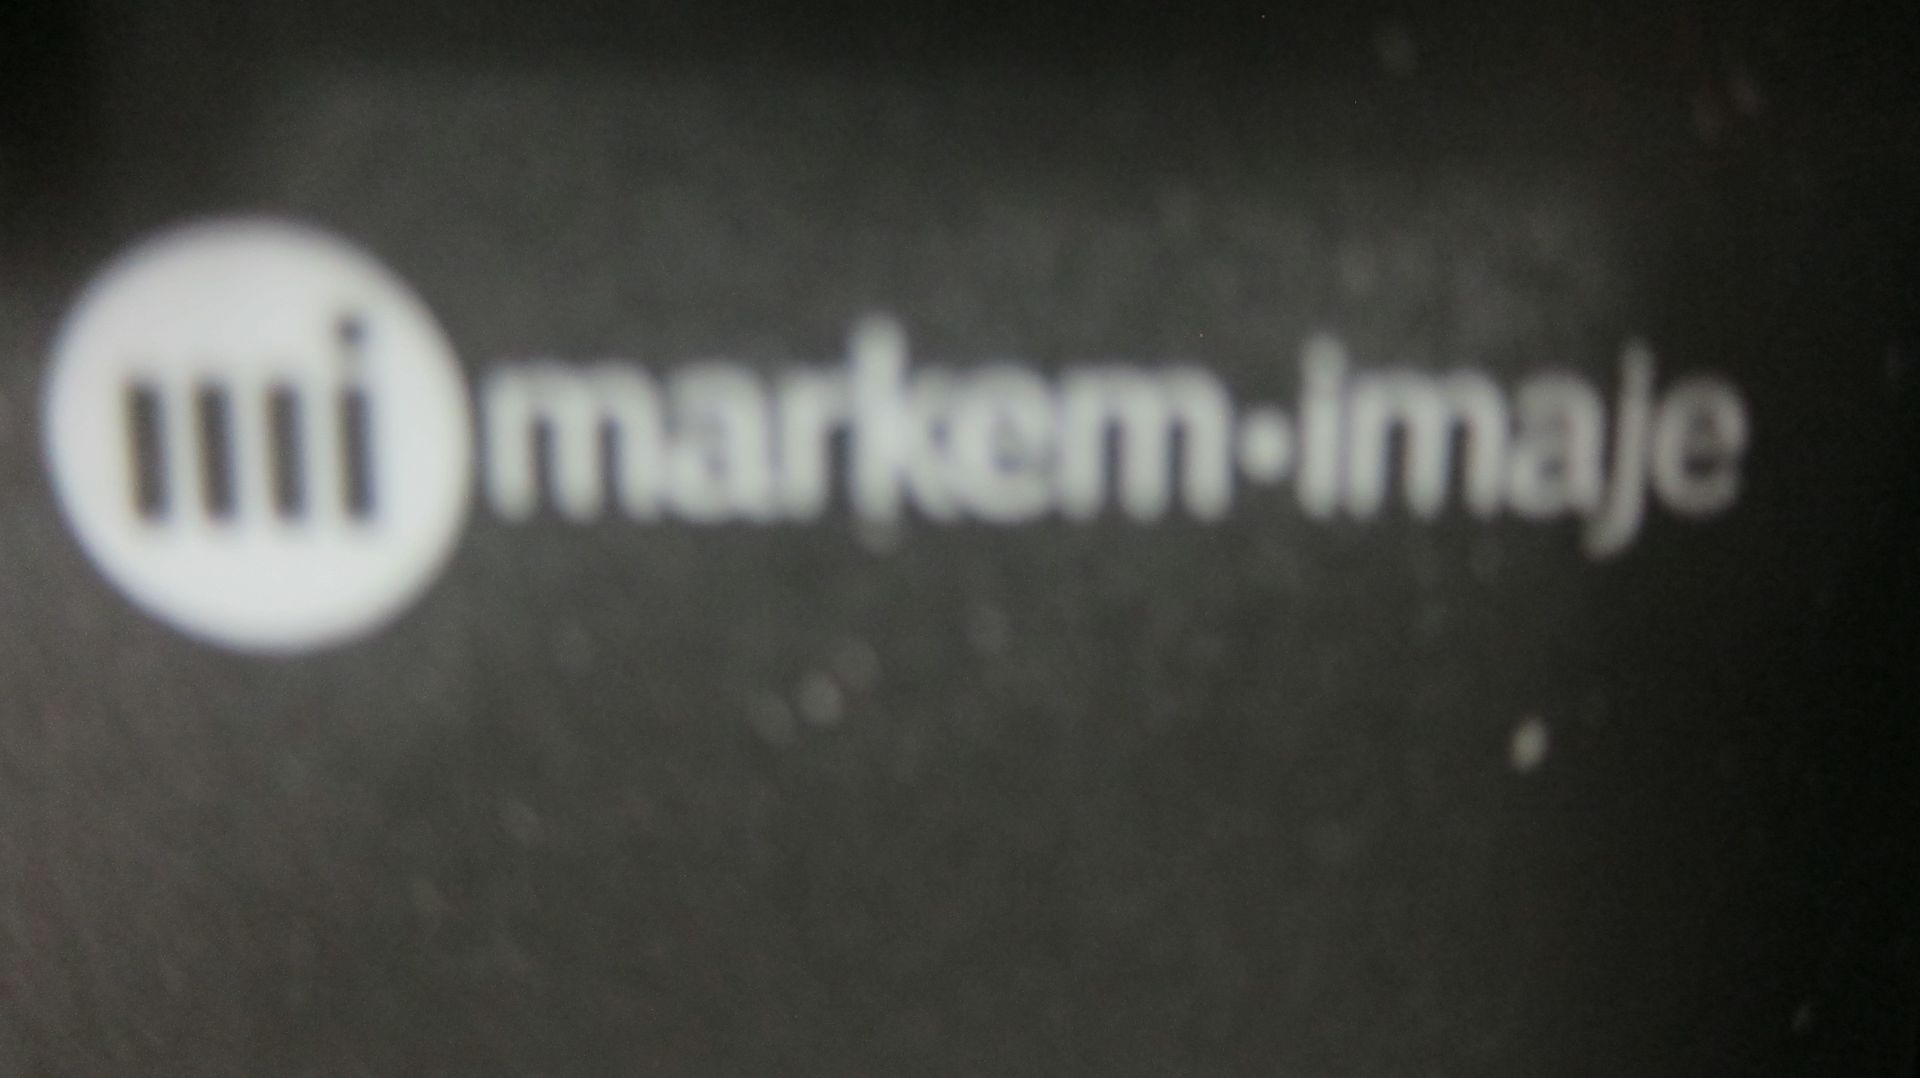 Markem Imaje Printer with Stand | Markem Imaje Printer with Stand. Model 5800 dual head printer. - Image 4 of 4